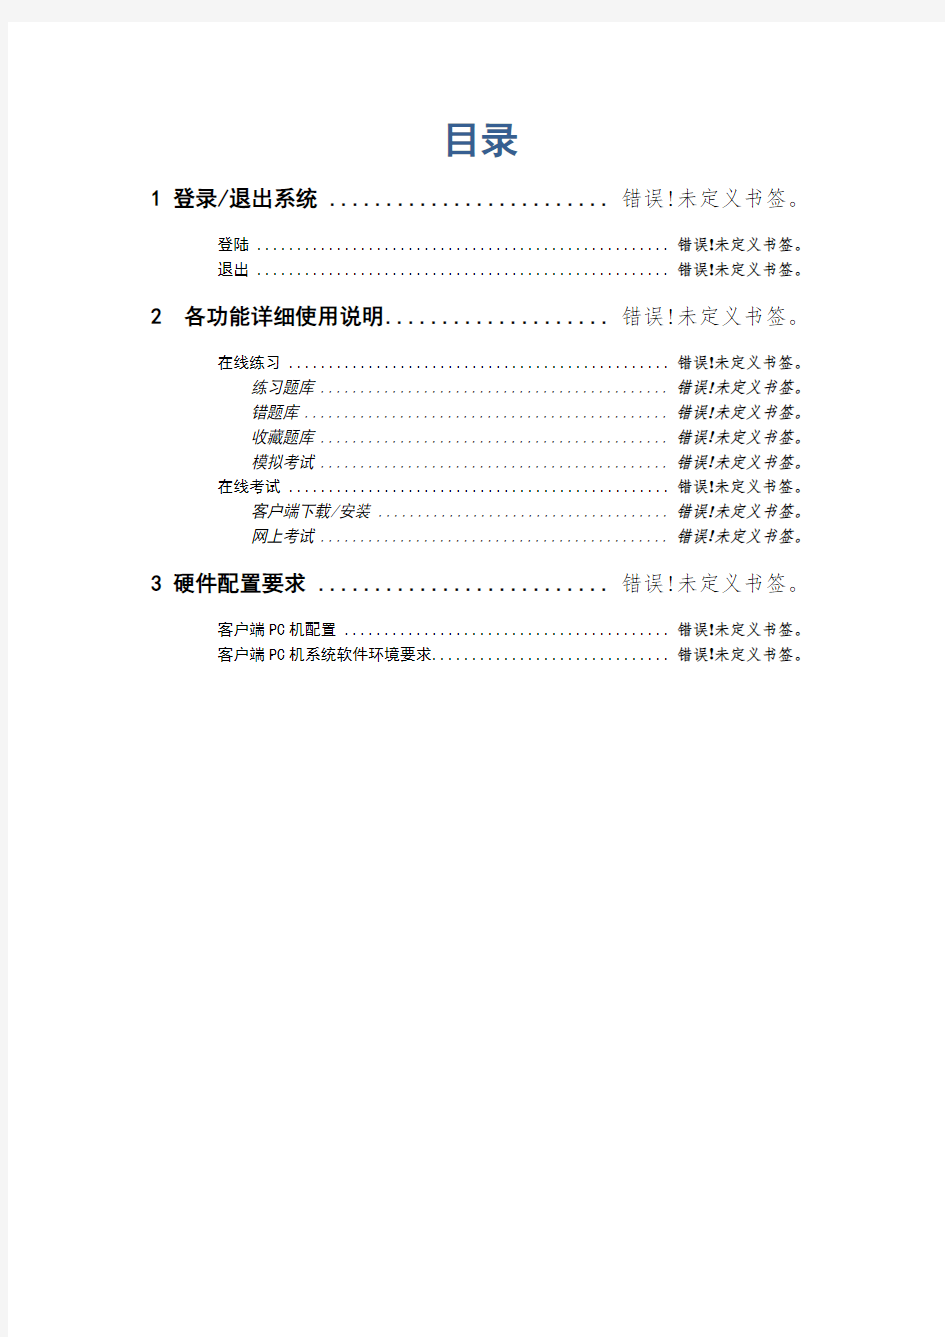 郑州大学现代远程教育学院 网上考试系统 用户使用手册